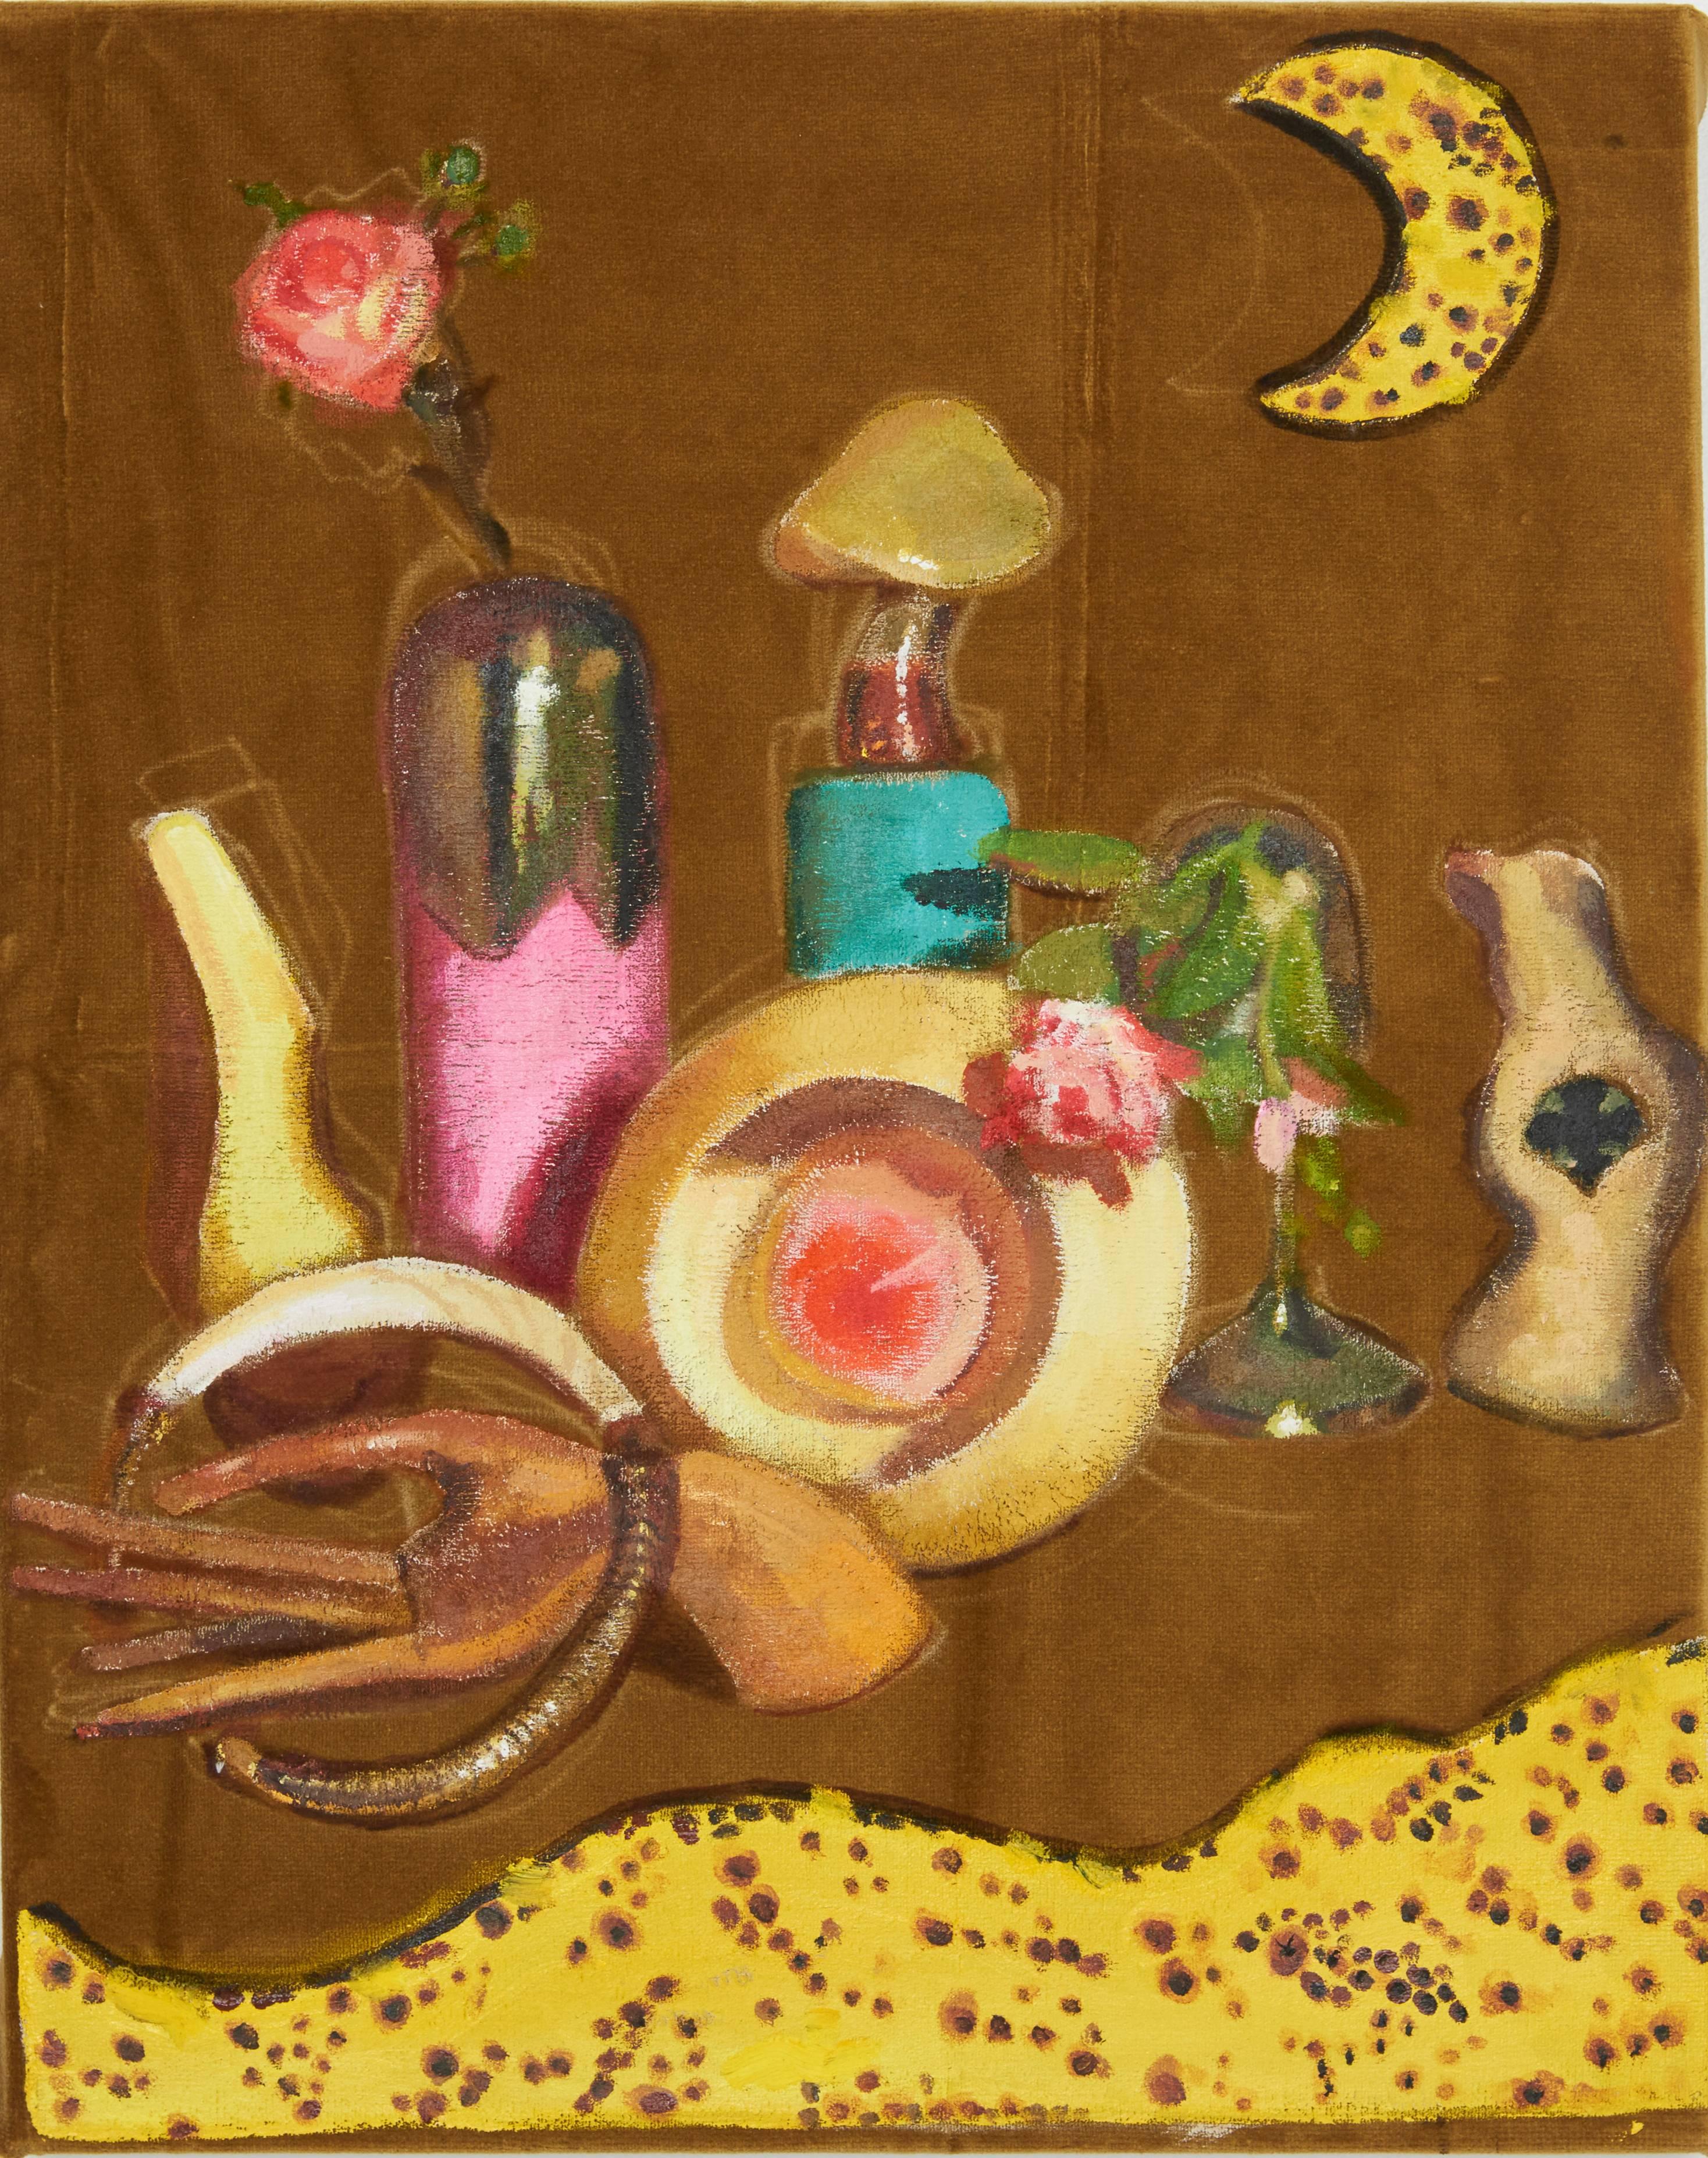 Meg Franklin Still-Life Painting - "Banana Moon" Abstract Still Life Painting